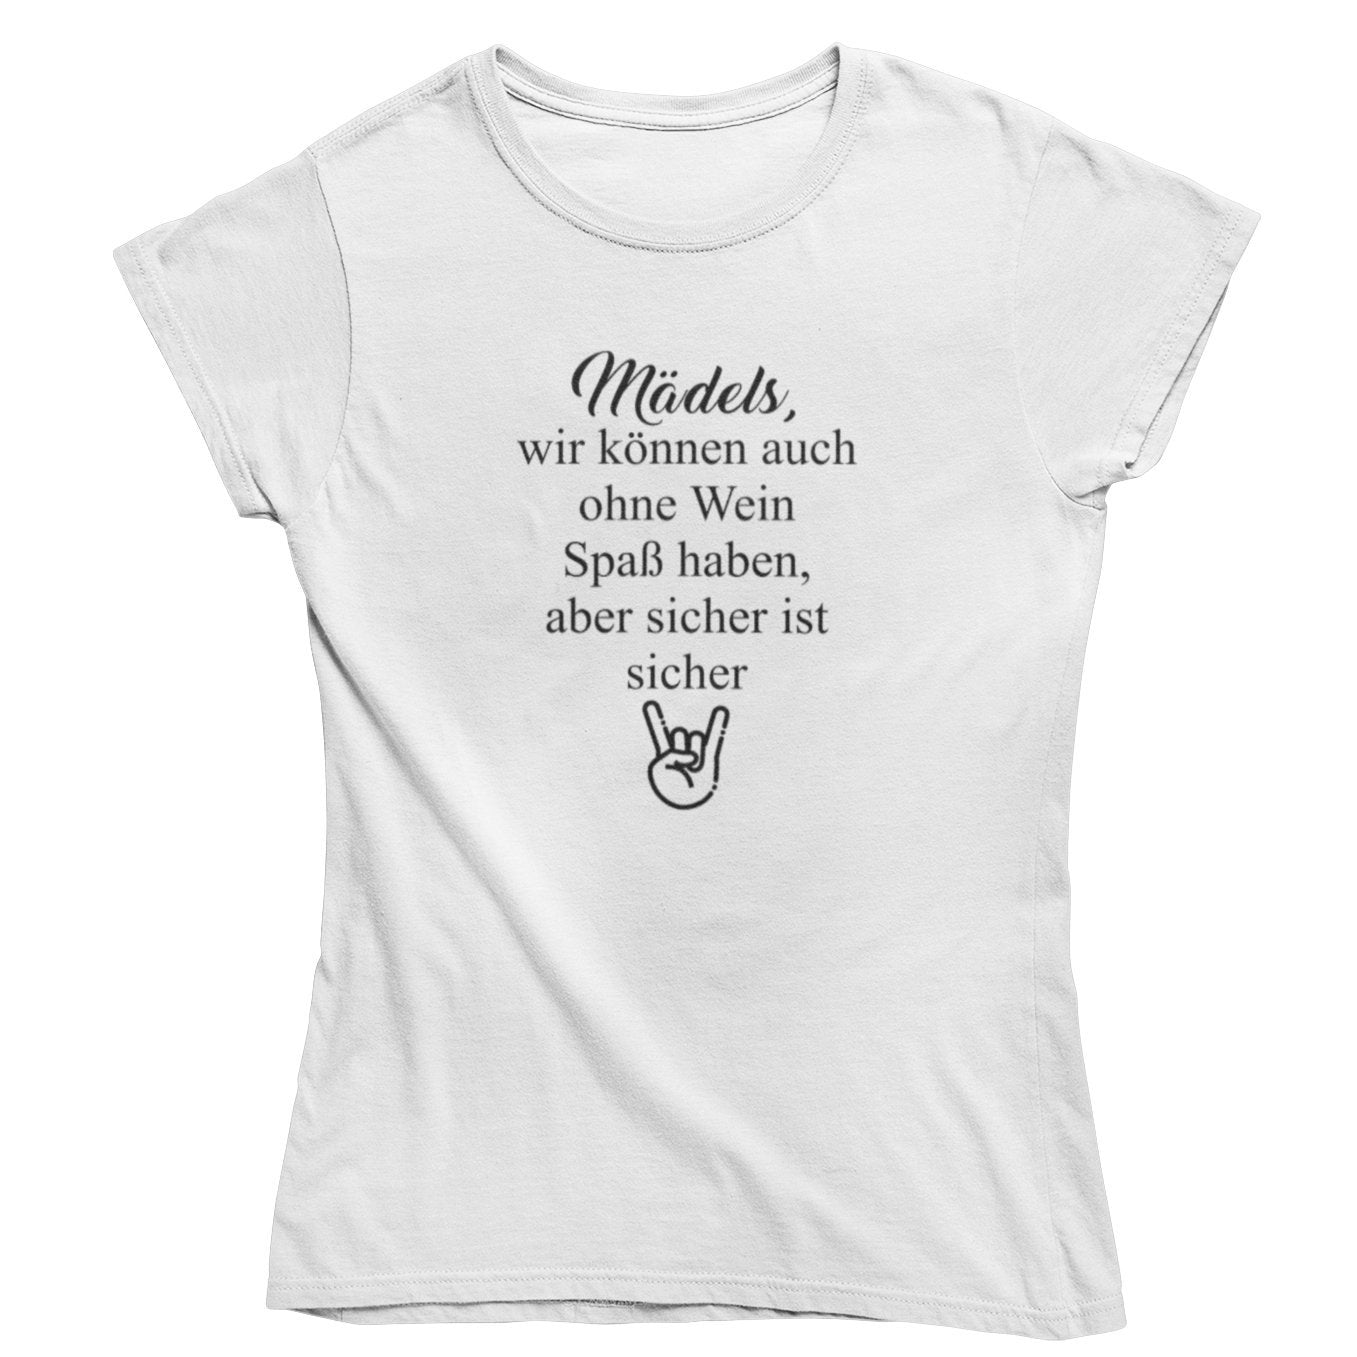 Mädels, sicher ist sicher - Bio Shirt Damen - Weinspirits